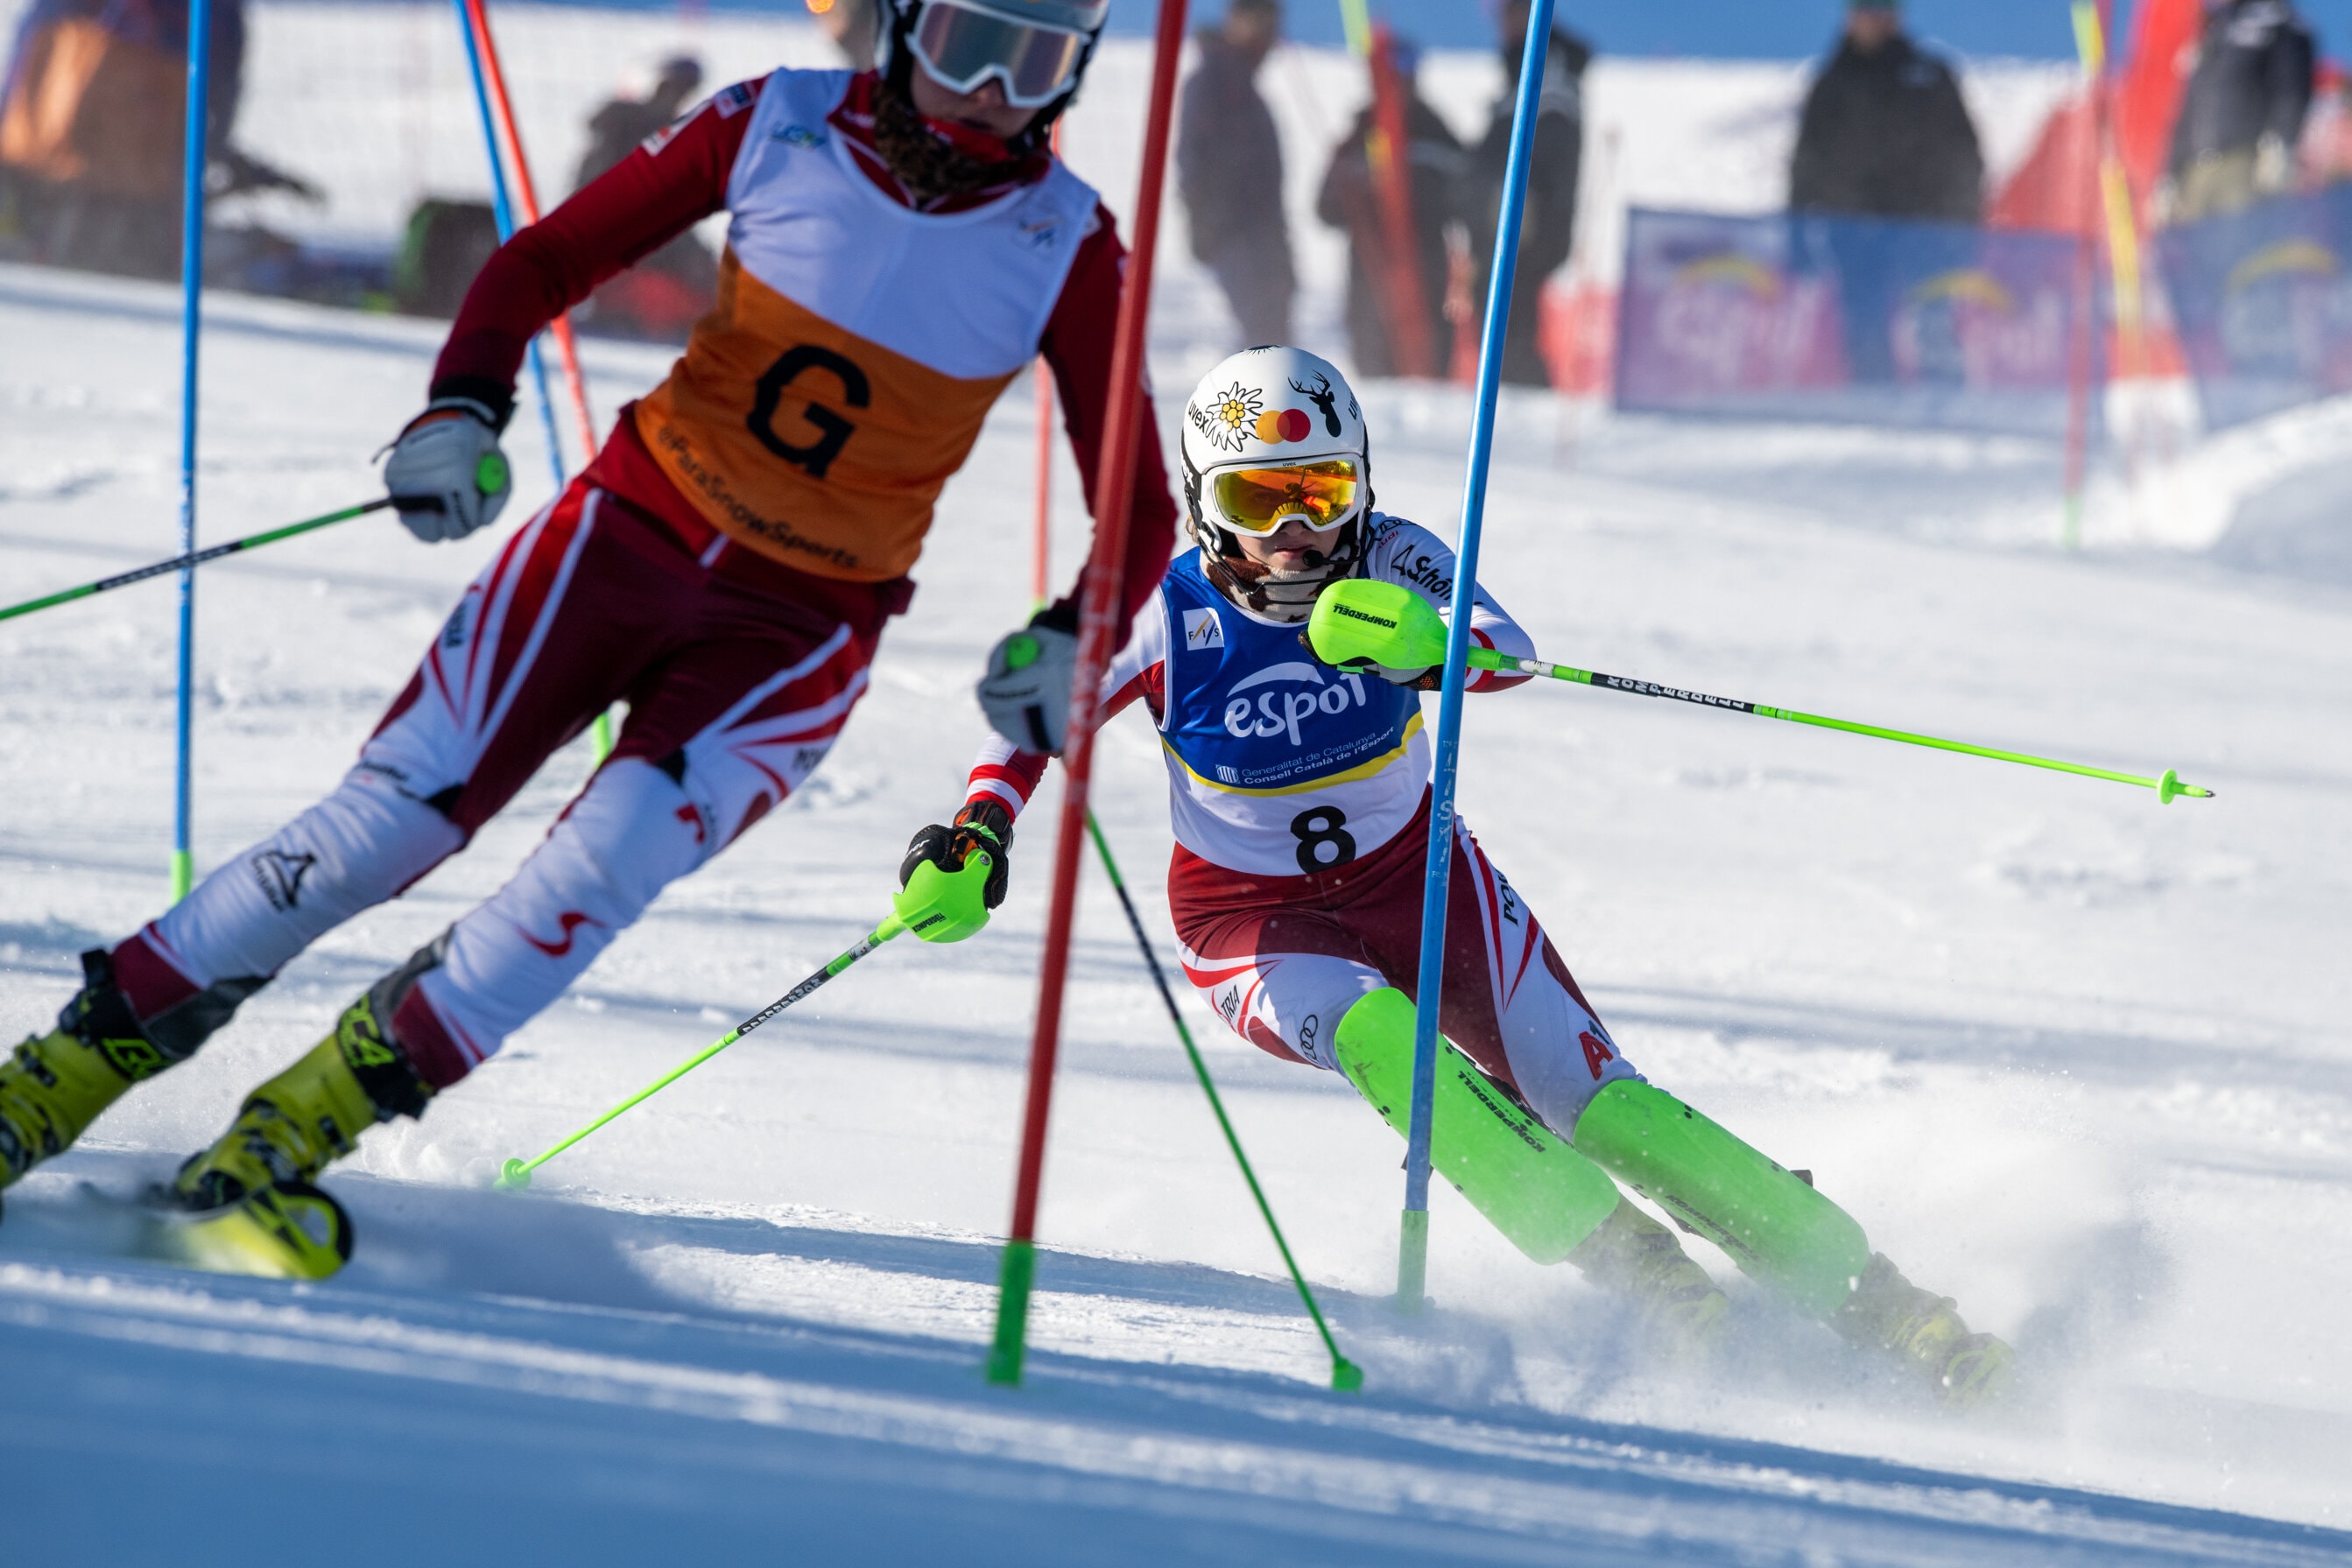 Imatge d'un esquiador amb discapacitat visual fent una baixada. juntamet amb el seu guia